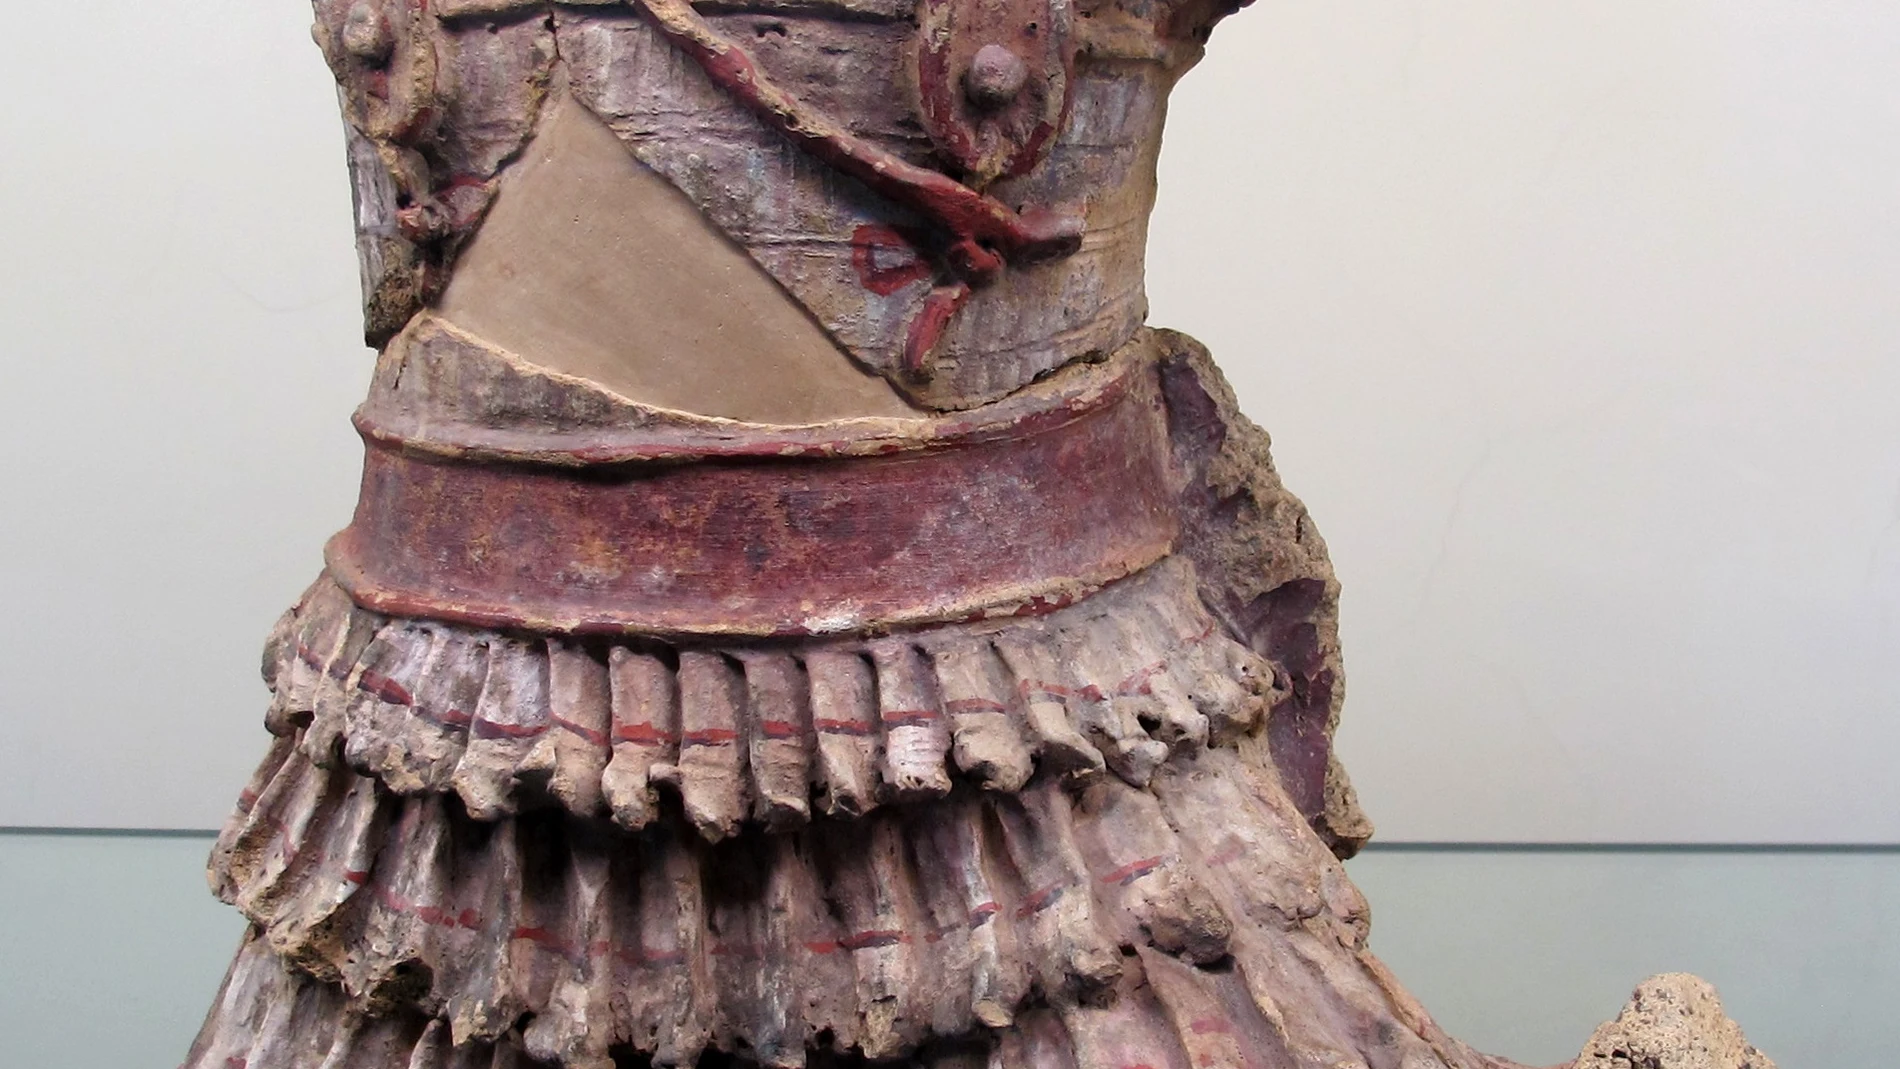 Fragmento de friso figurado del siglo II a.C. Una armadura de lino, llamada "linothorax" por los griegos